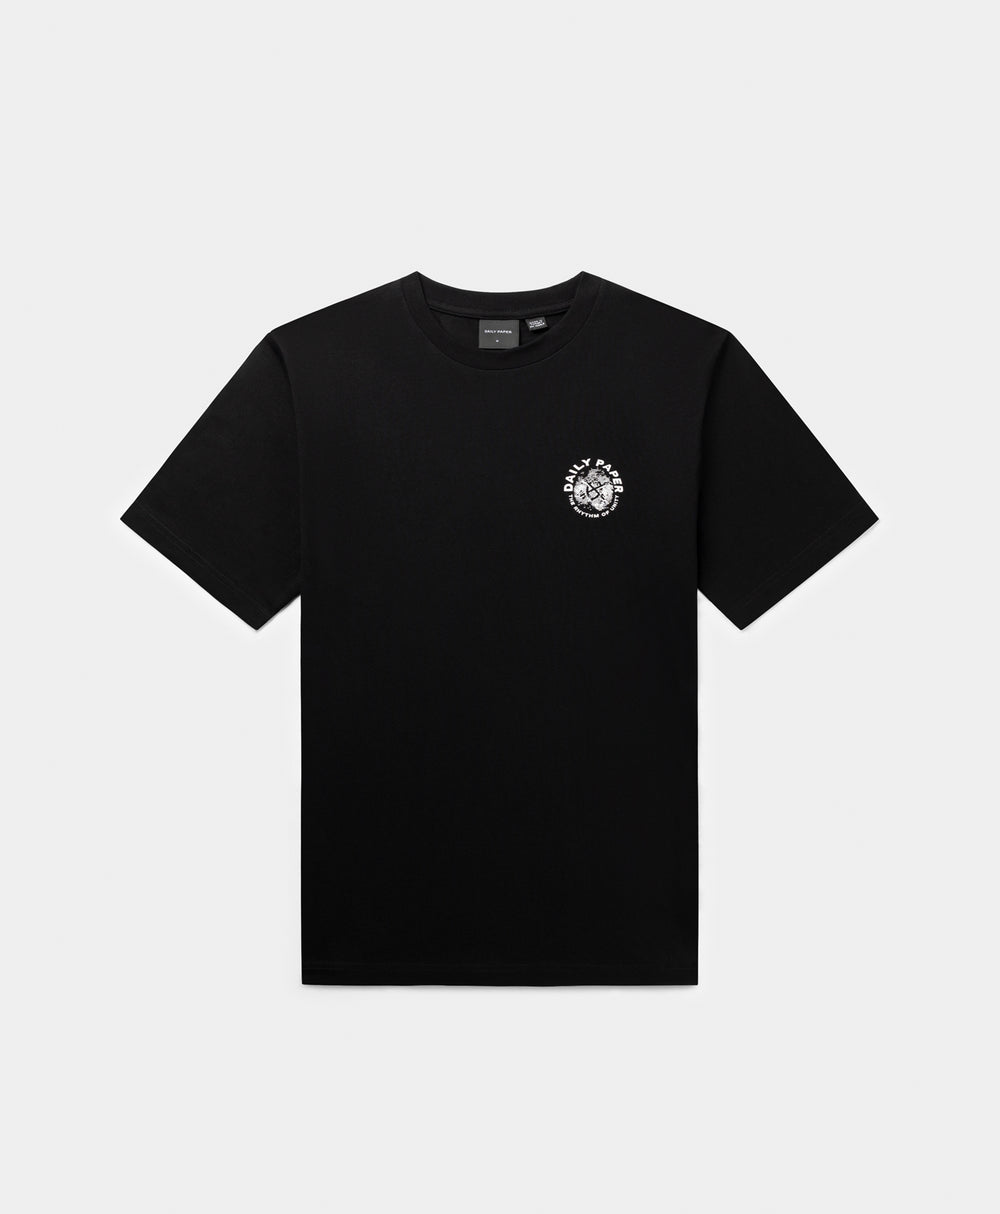 DP - Black Identity T-Shirt - Packshot - Rear